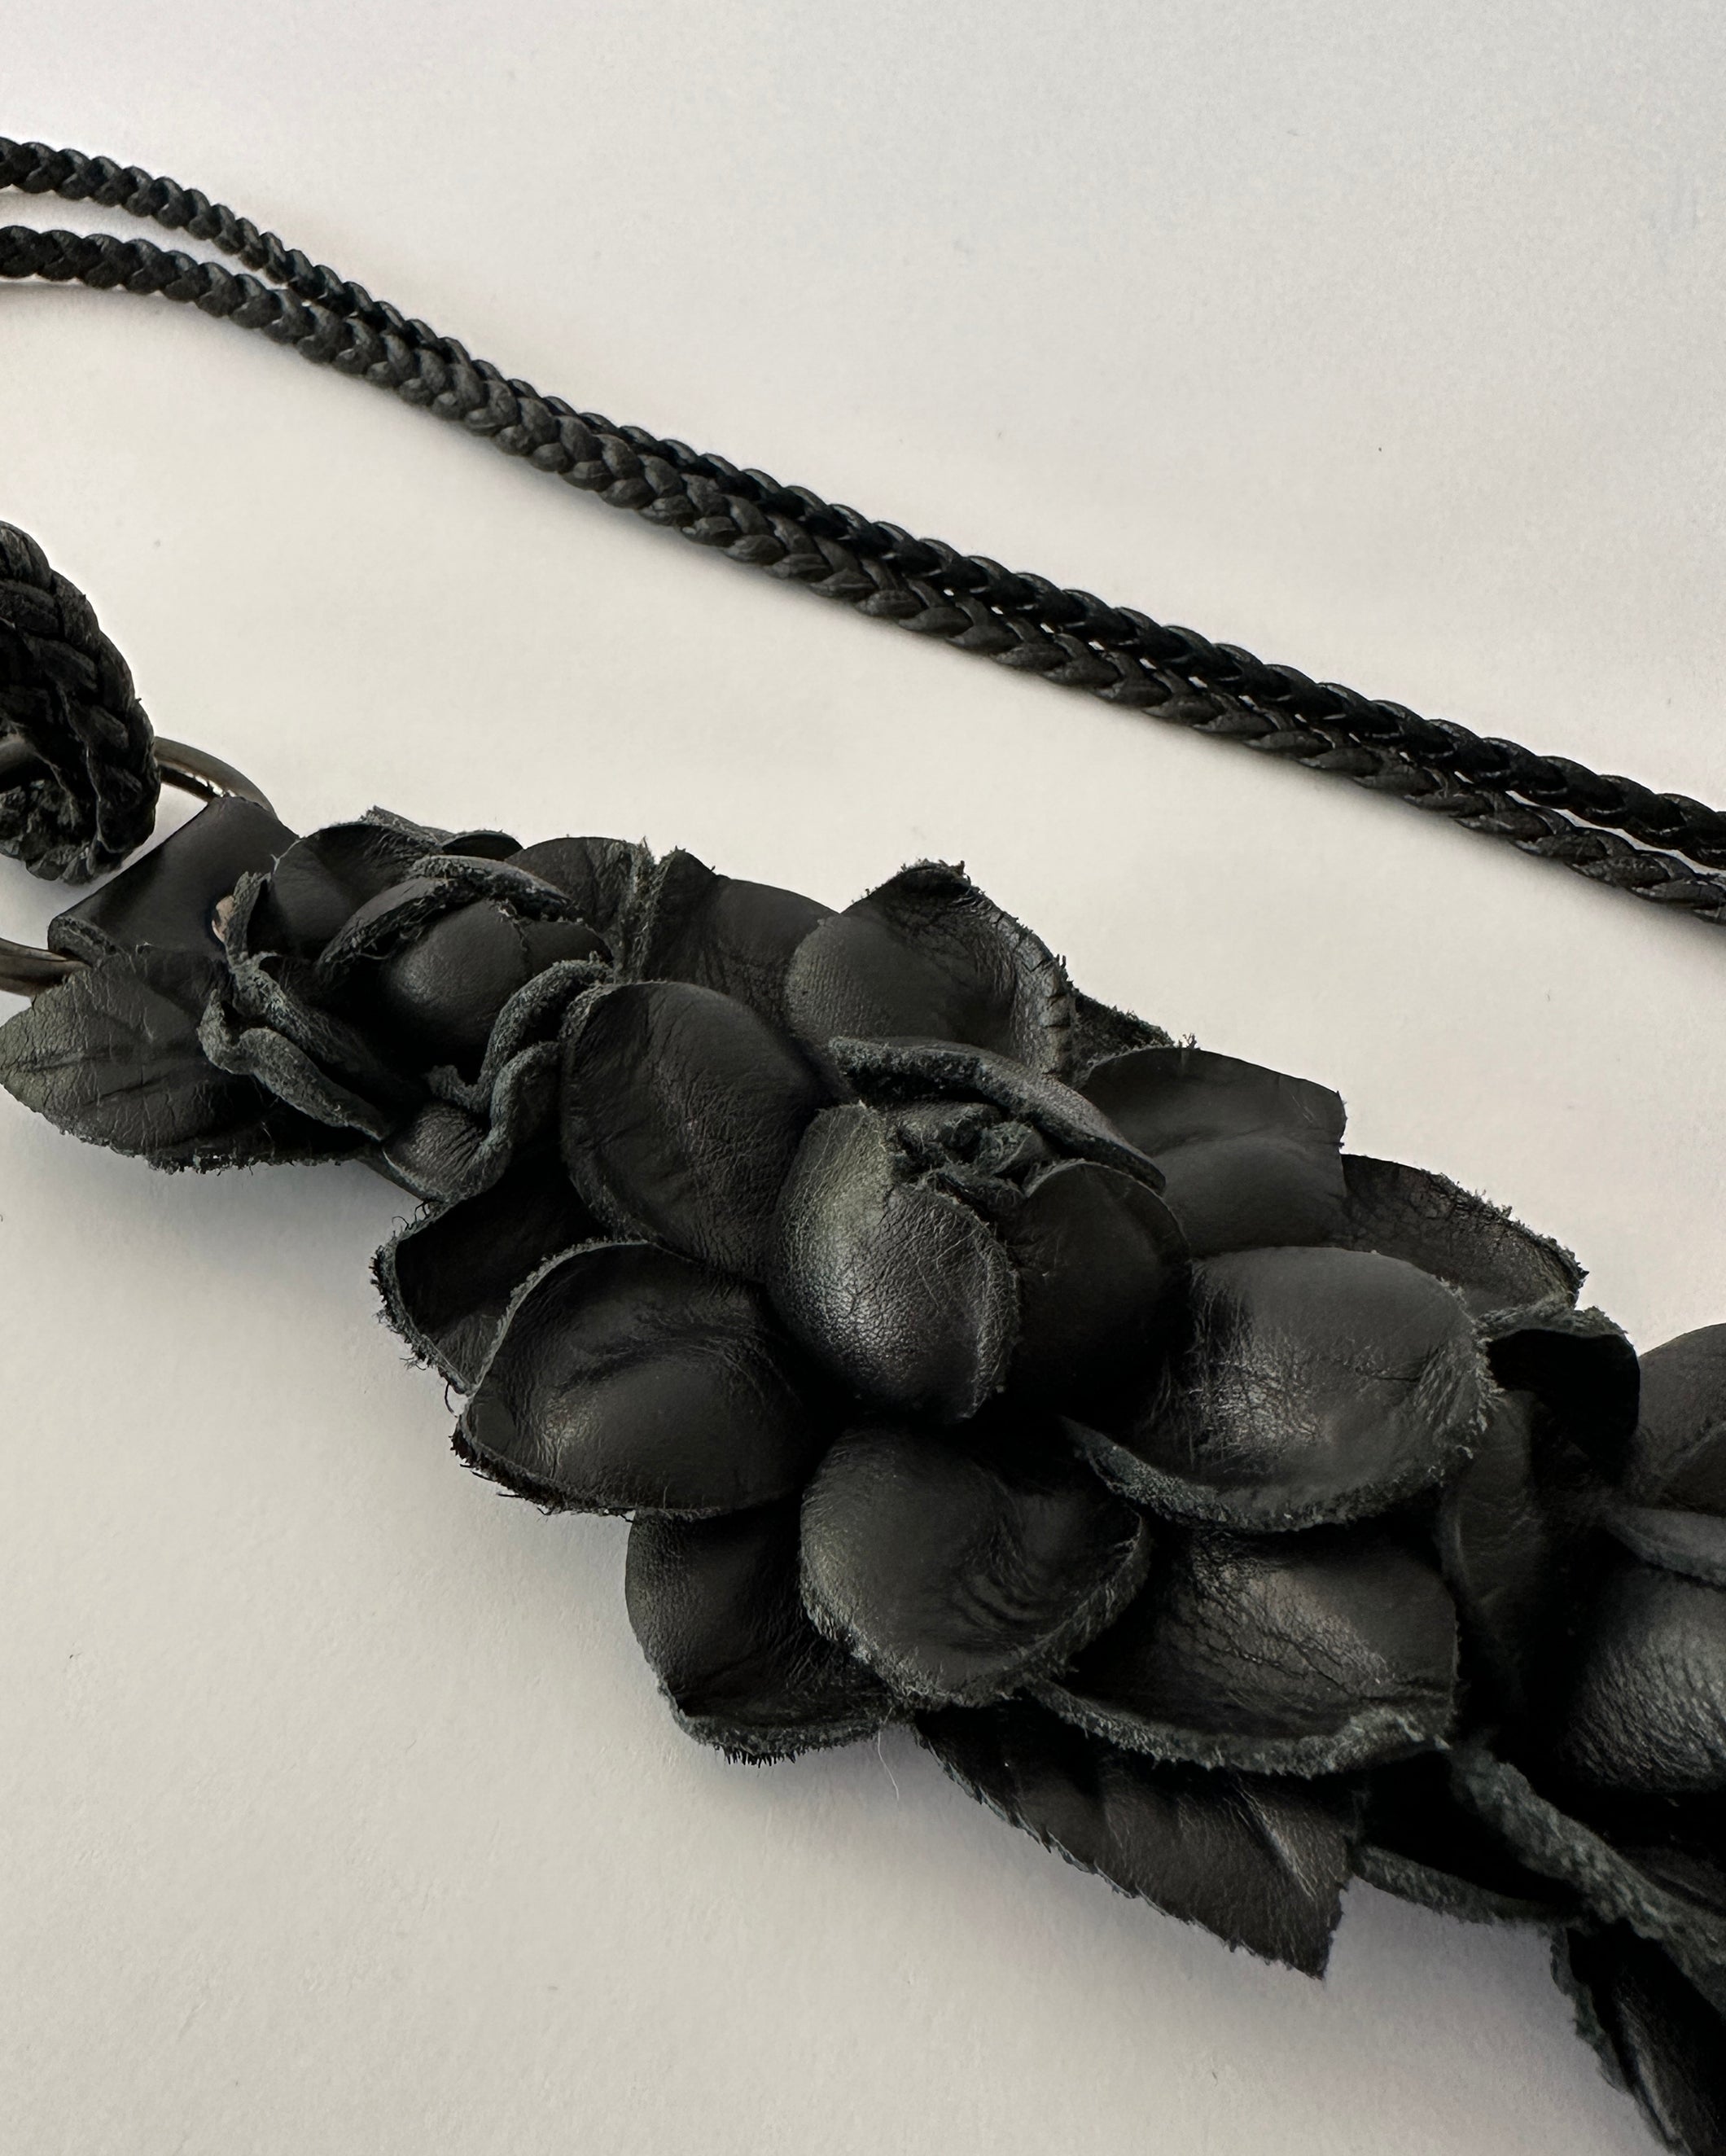 Leather flower belt/necklace